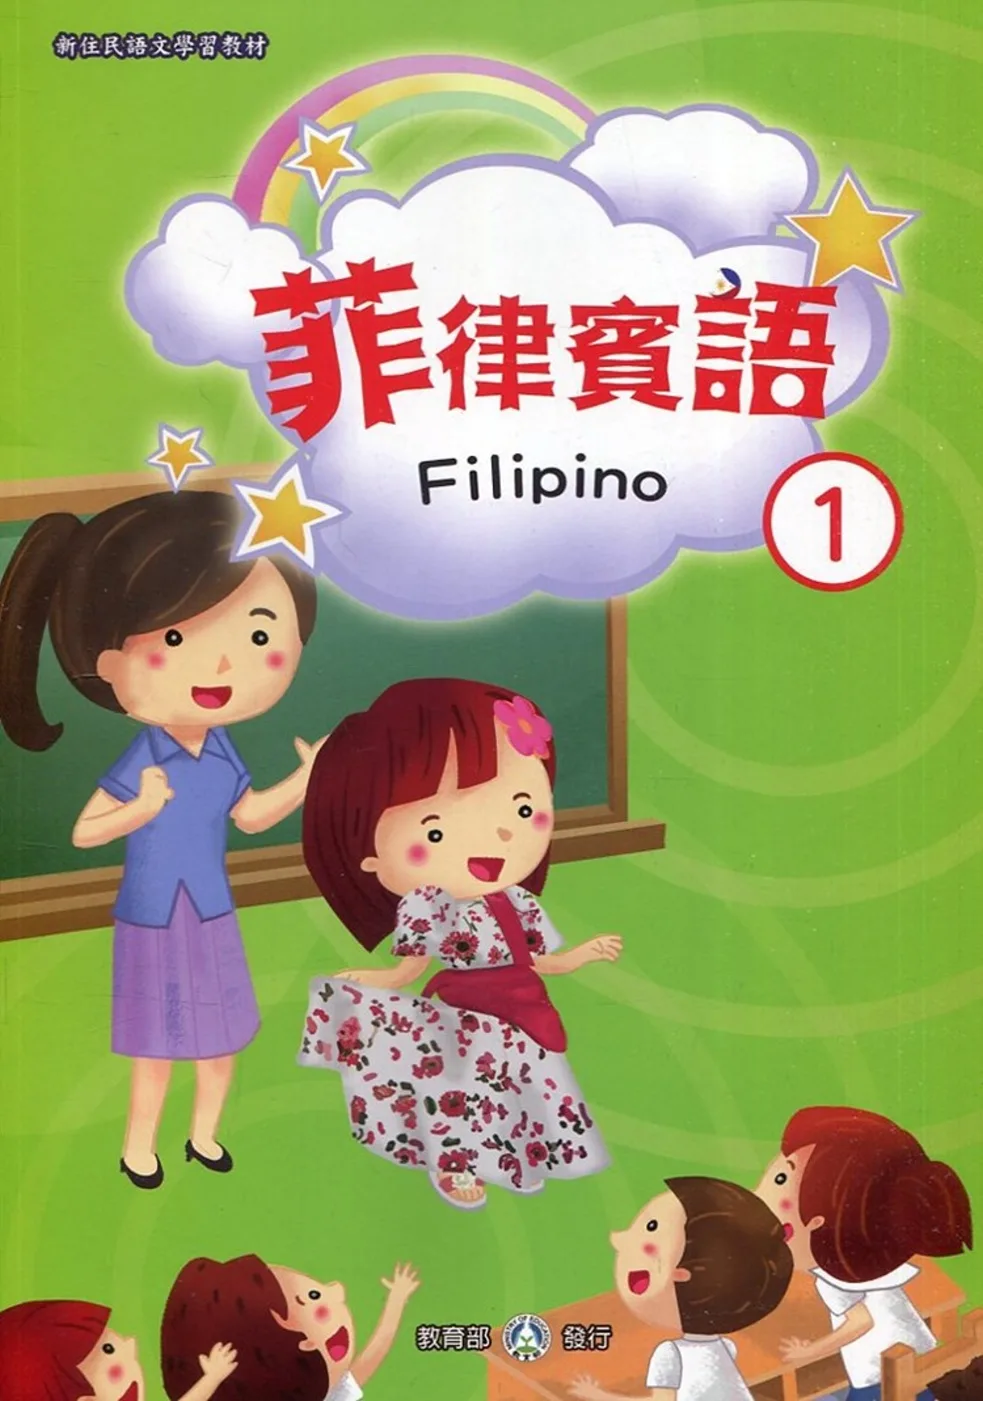 新住民語文學習教材菲律賓語第1冊(二版)